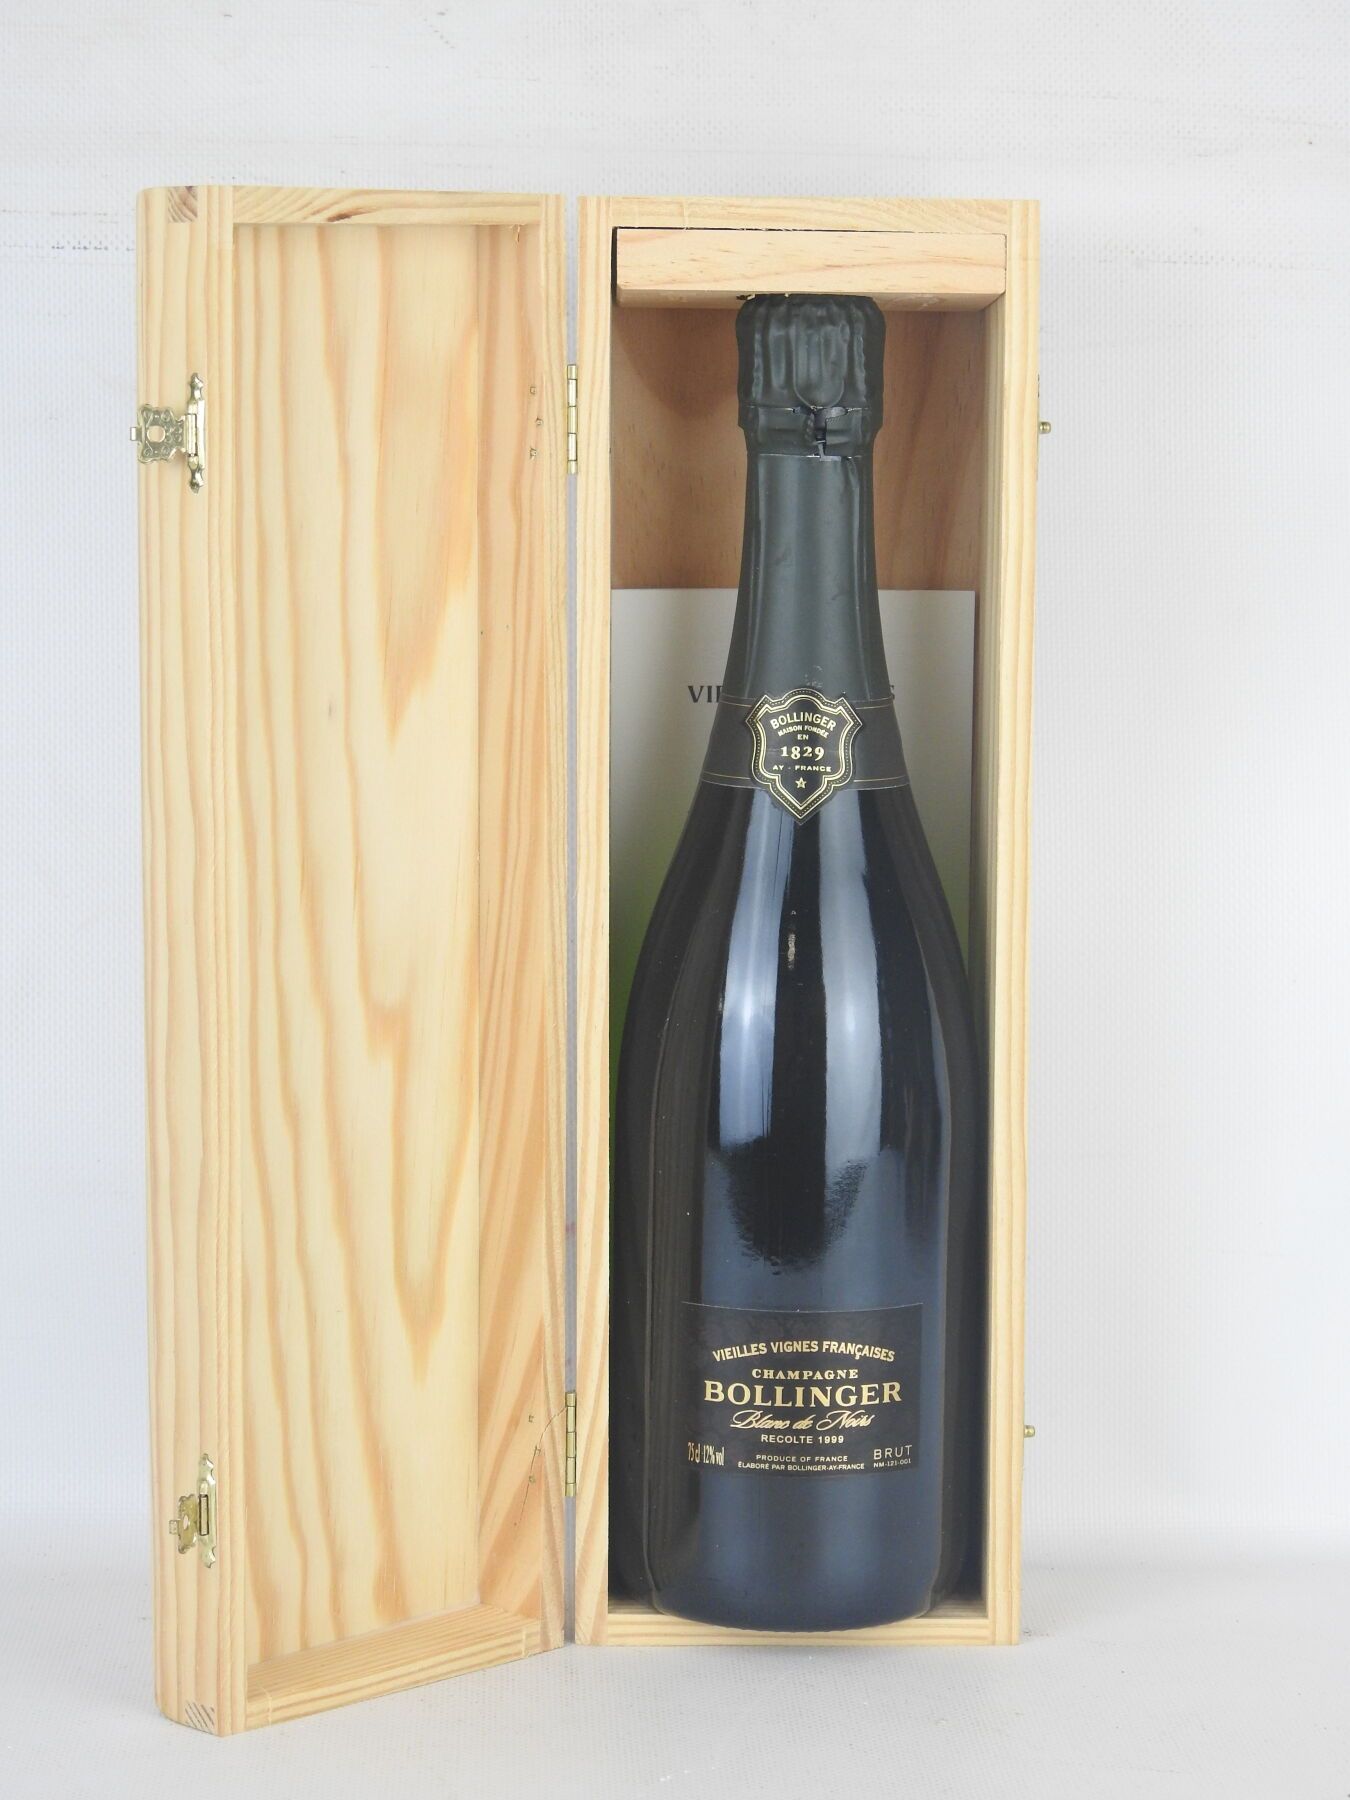 Null 1 瓶 Bollinger vieilles vignes francaise 1999 香槟。木盒包装。